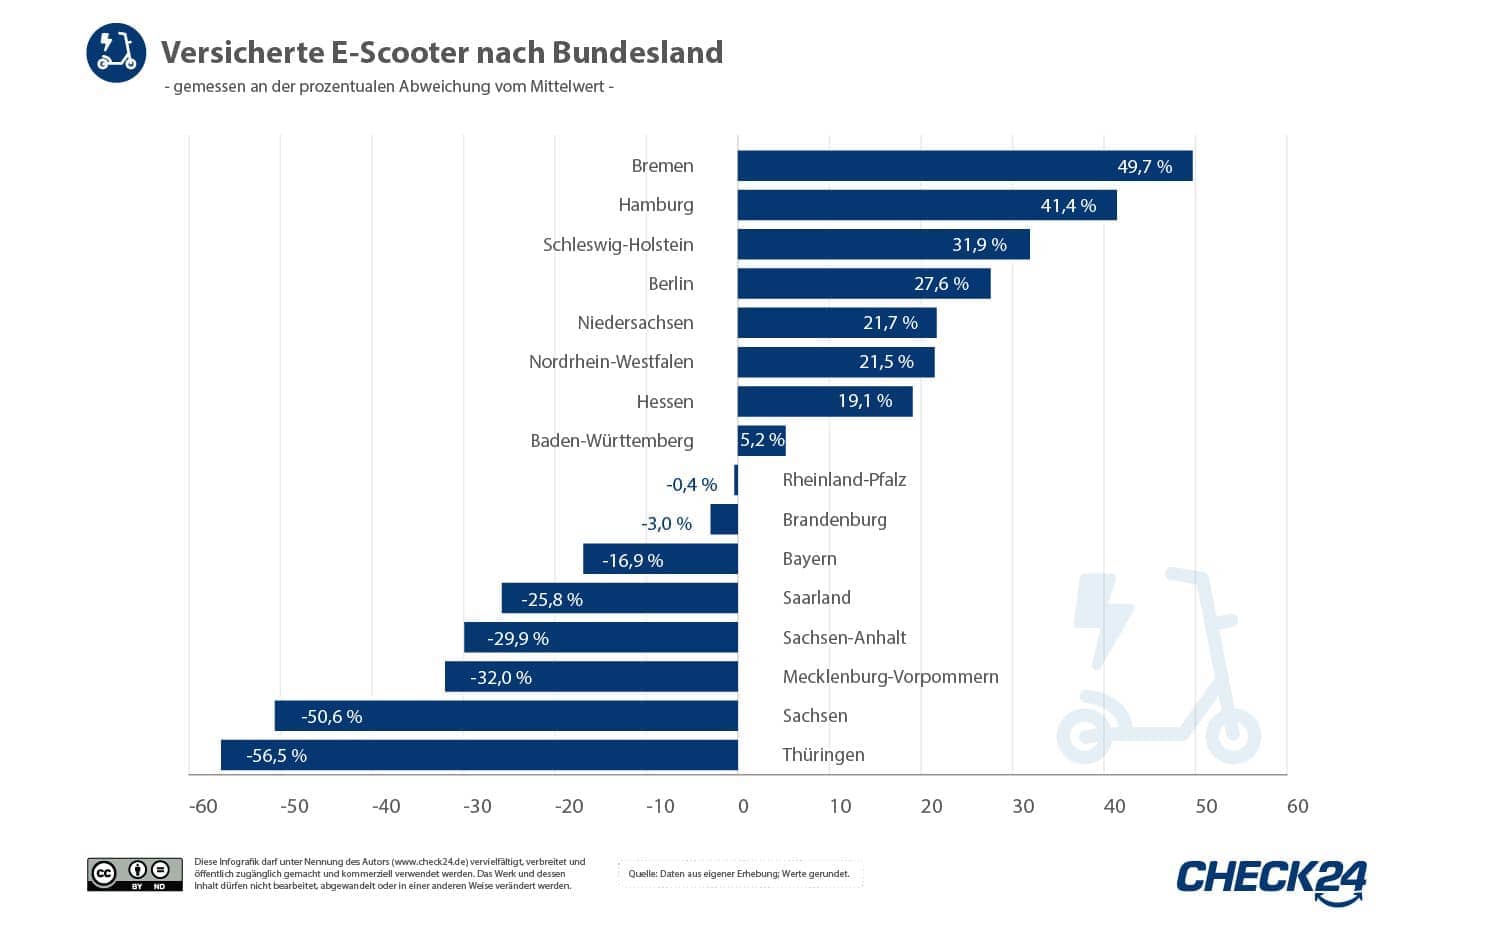 Balkendiagramm der versicherten E-Scooter nach Bundesland.